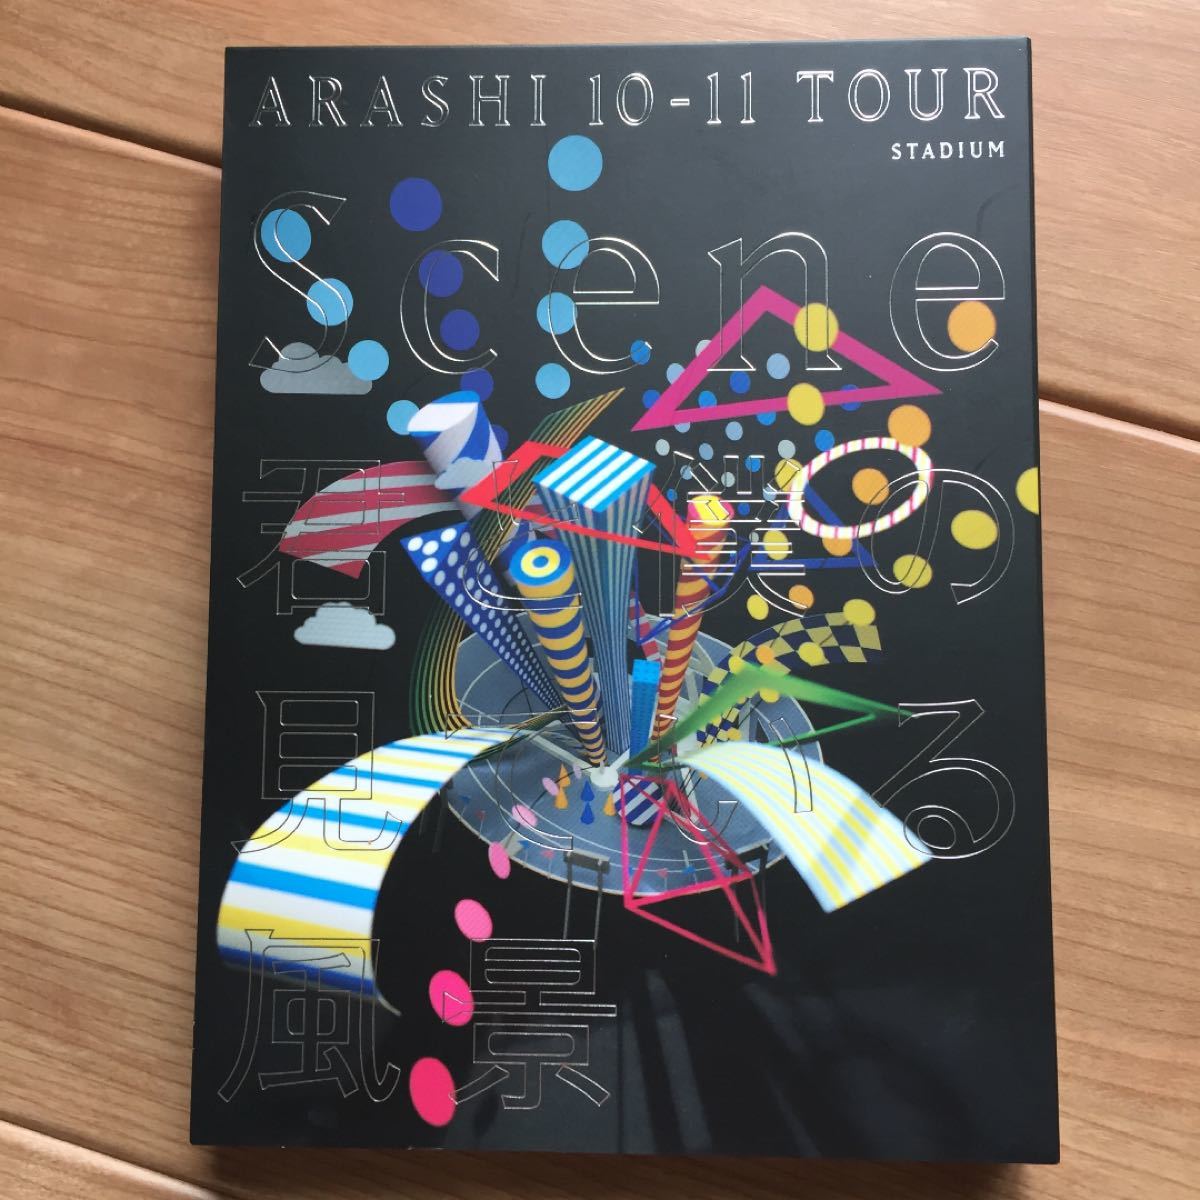 嵐/ARASHI 10-11 TOUR Scene〜君と僕の見ている風景